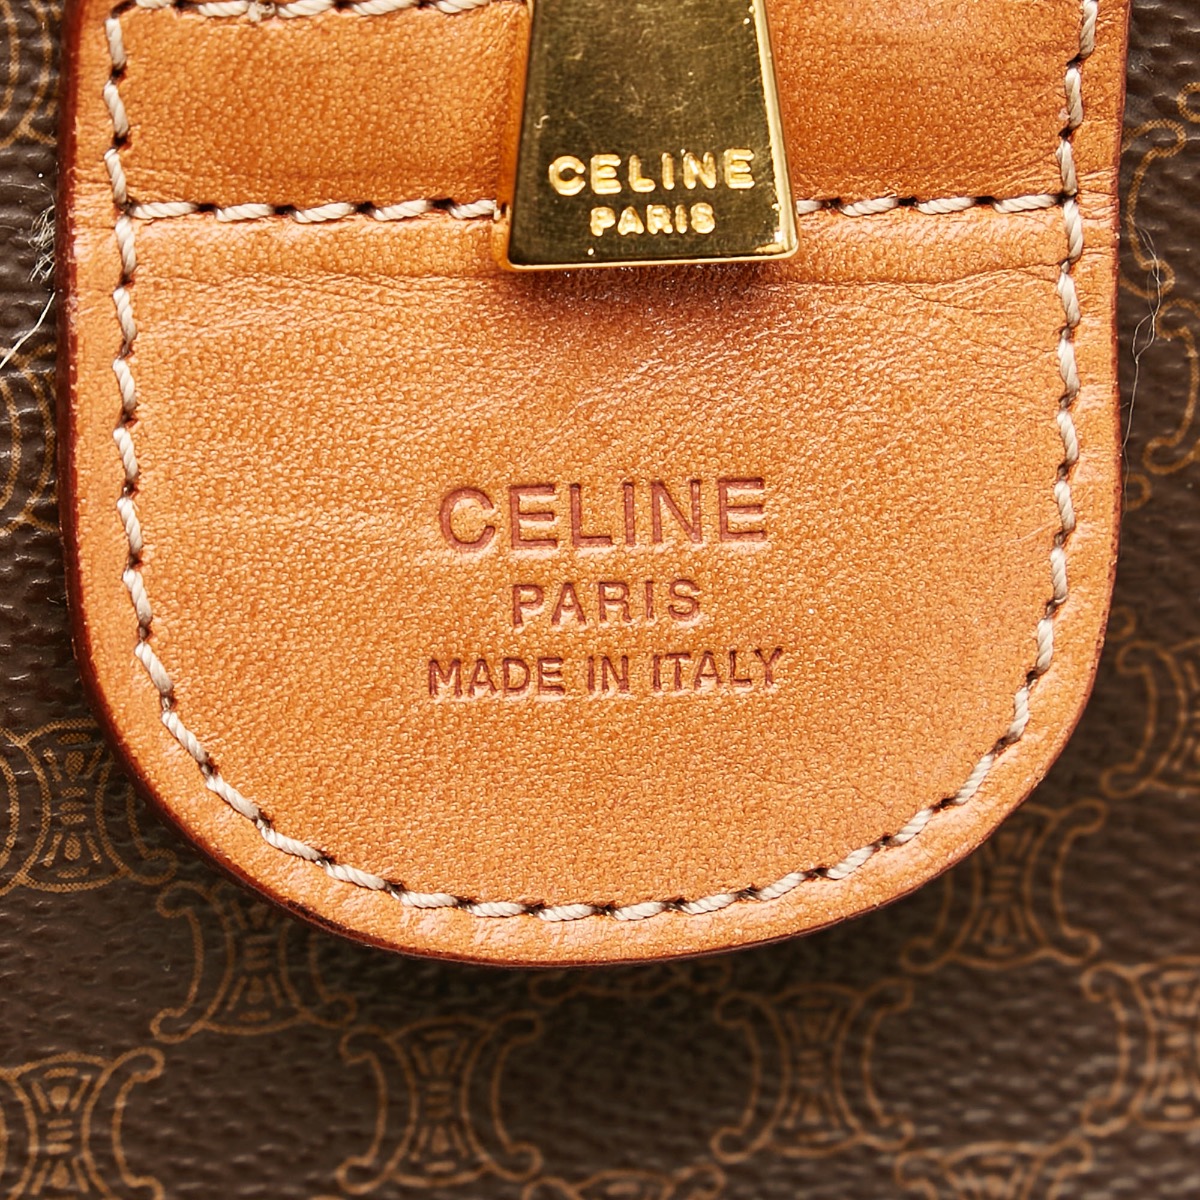 Celine Boston Travel Bag Macadam Light Brown x Gold color size W51 x H27 x  D23cm